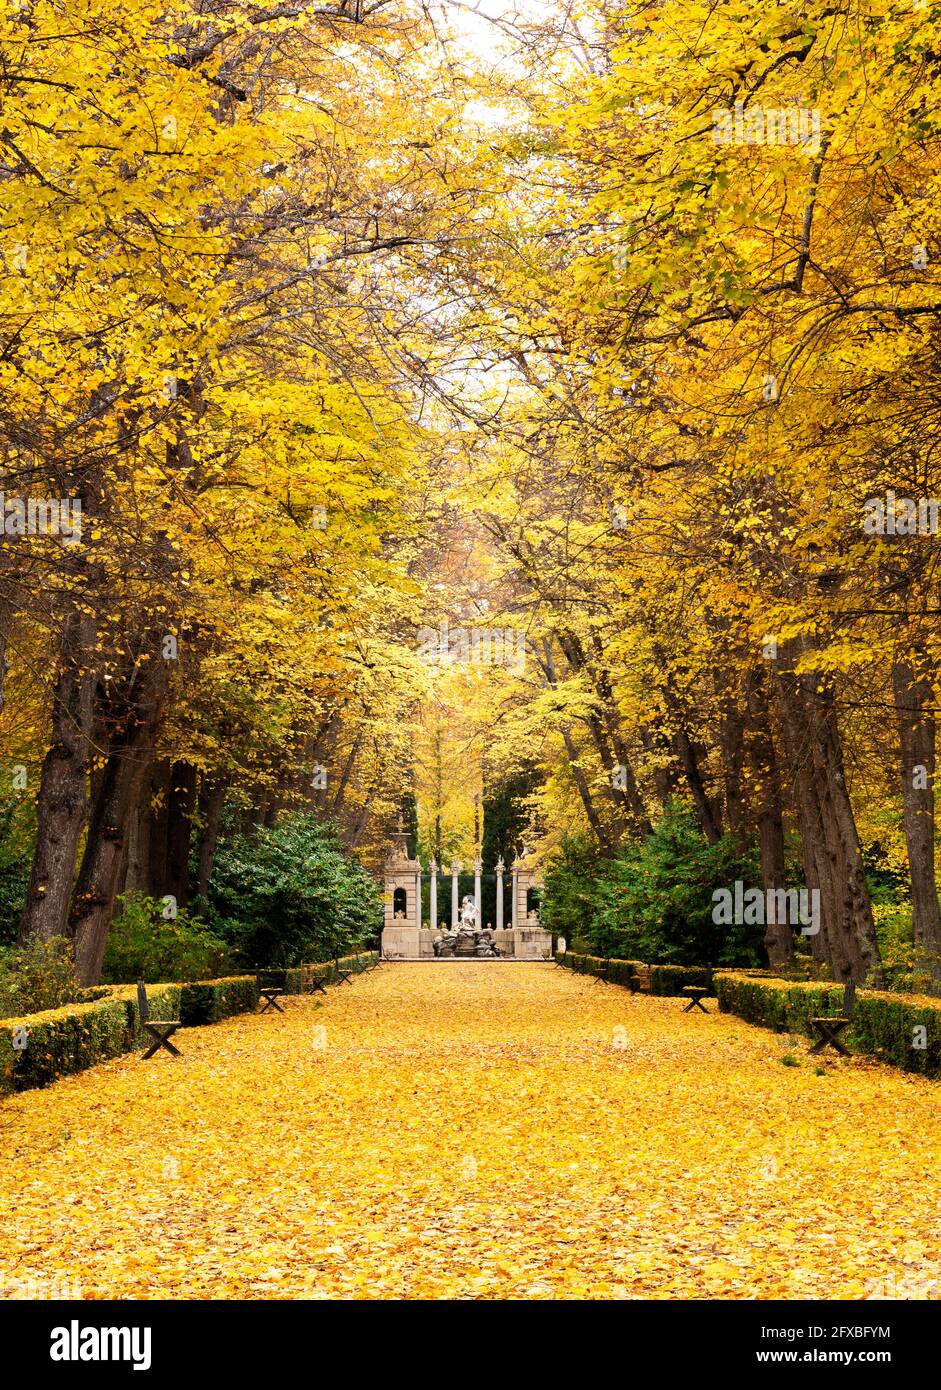 Passeggiata di alberi di tiglio con le foglie cadute sul terreno con forti colori dorati, gialli e arancioni e in fondo alla passeggiata un fou ornamentale Foto Stock